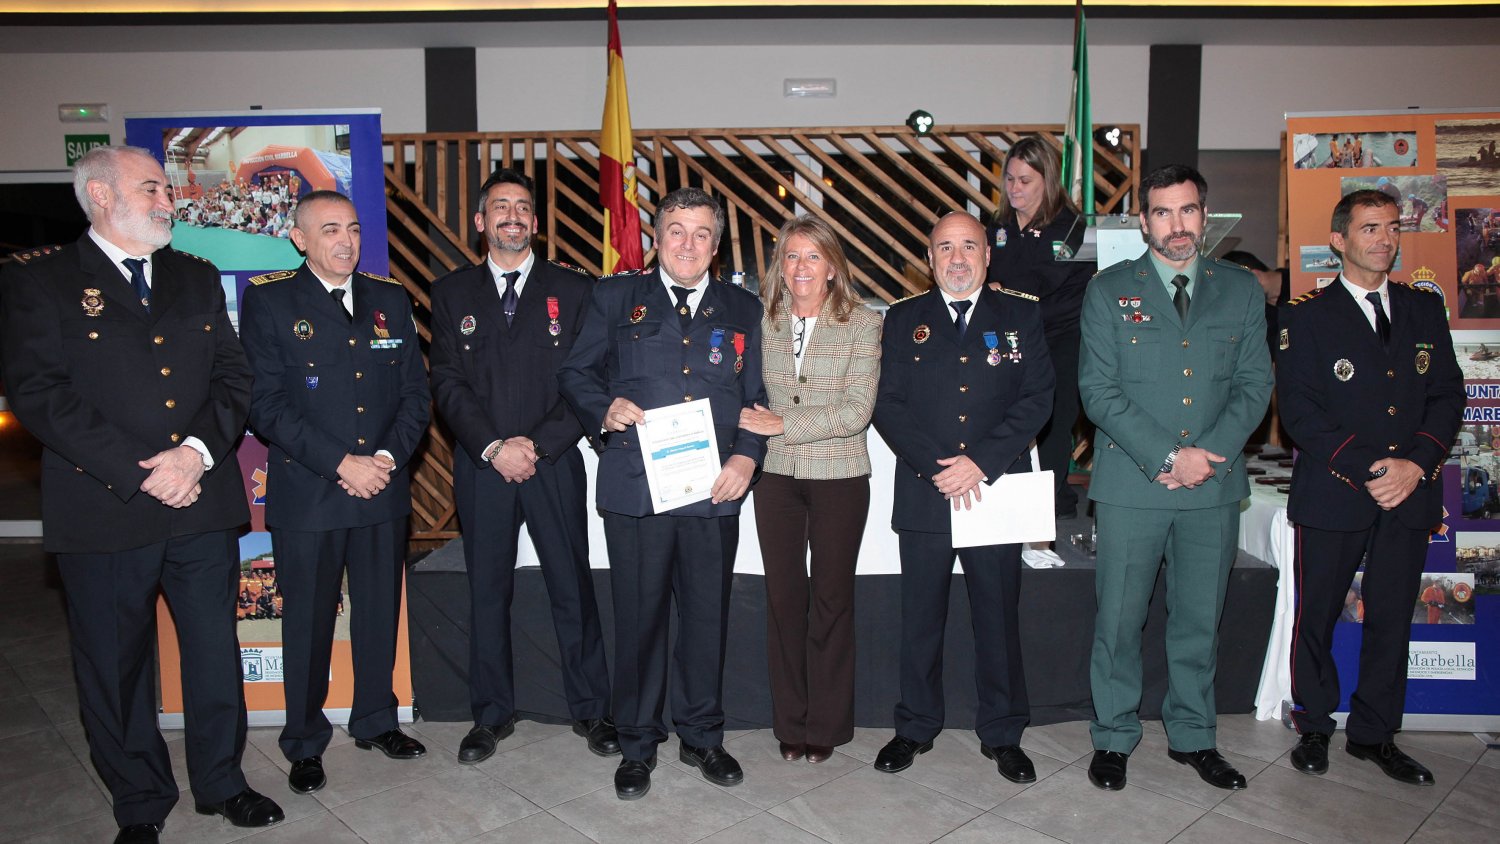 Marbella destaca la dedicación de los voluntarios de Protección Civil en la entrega de medallas a la agrupación